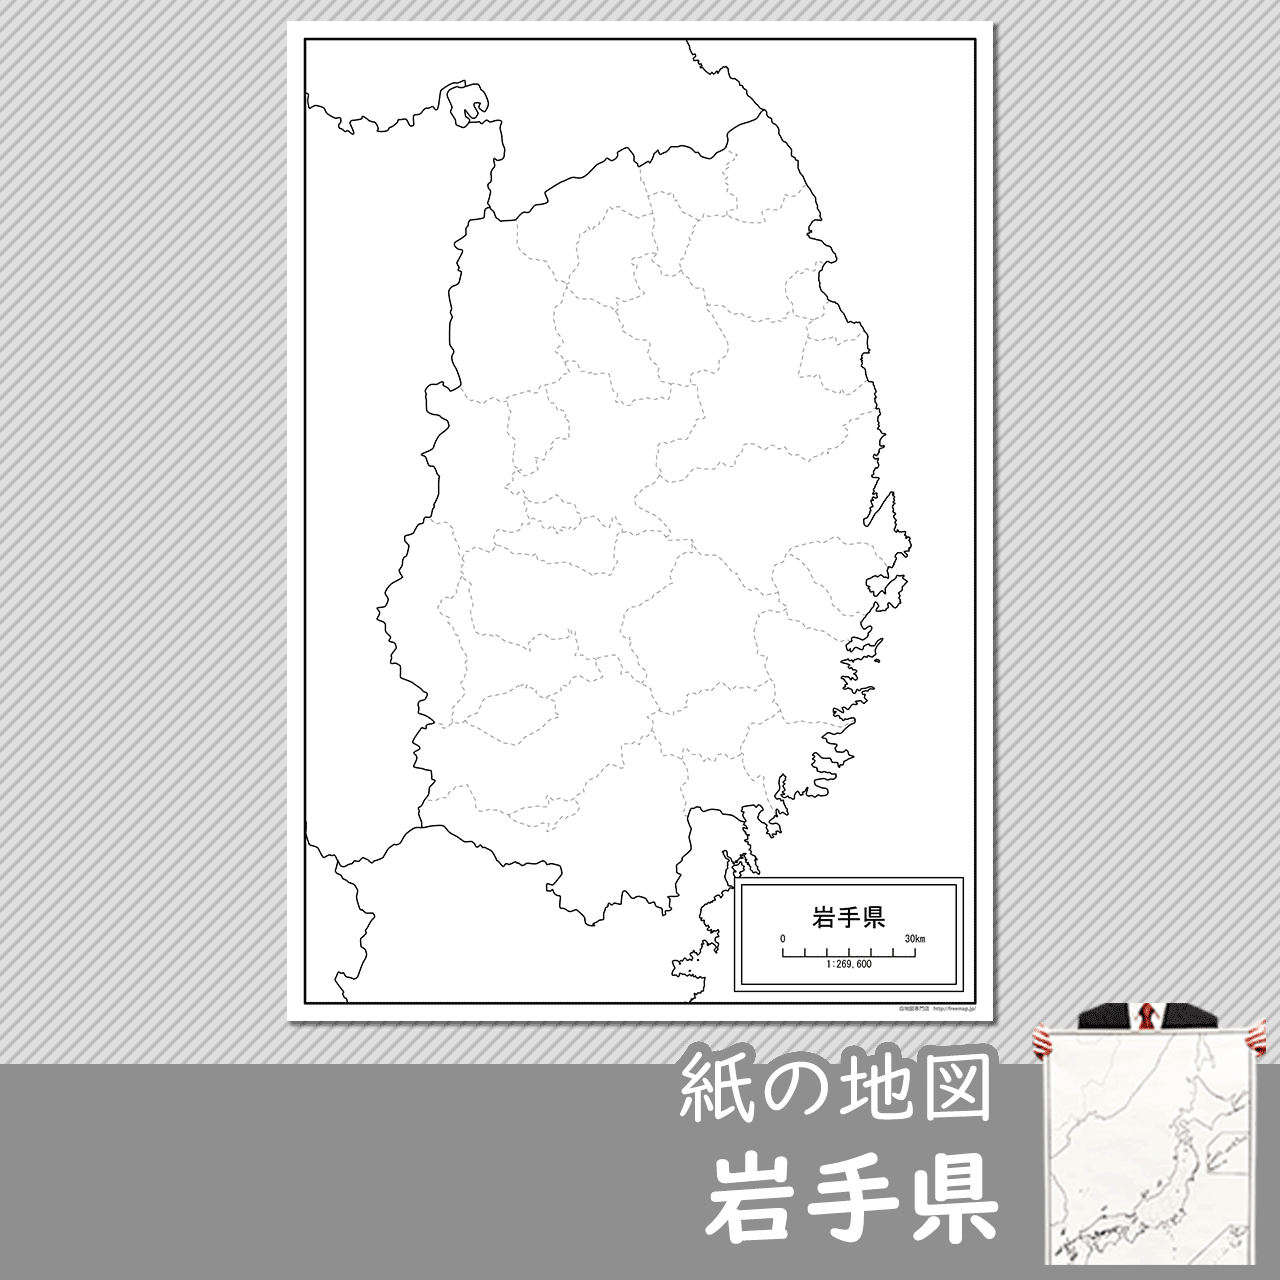 岩手県の紙の白地図のサムネイル